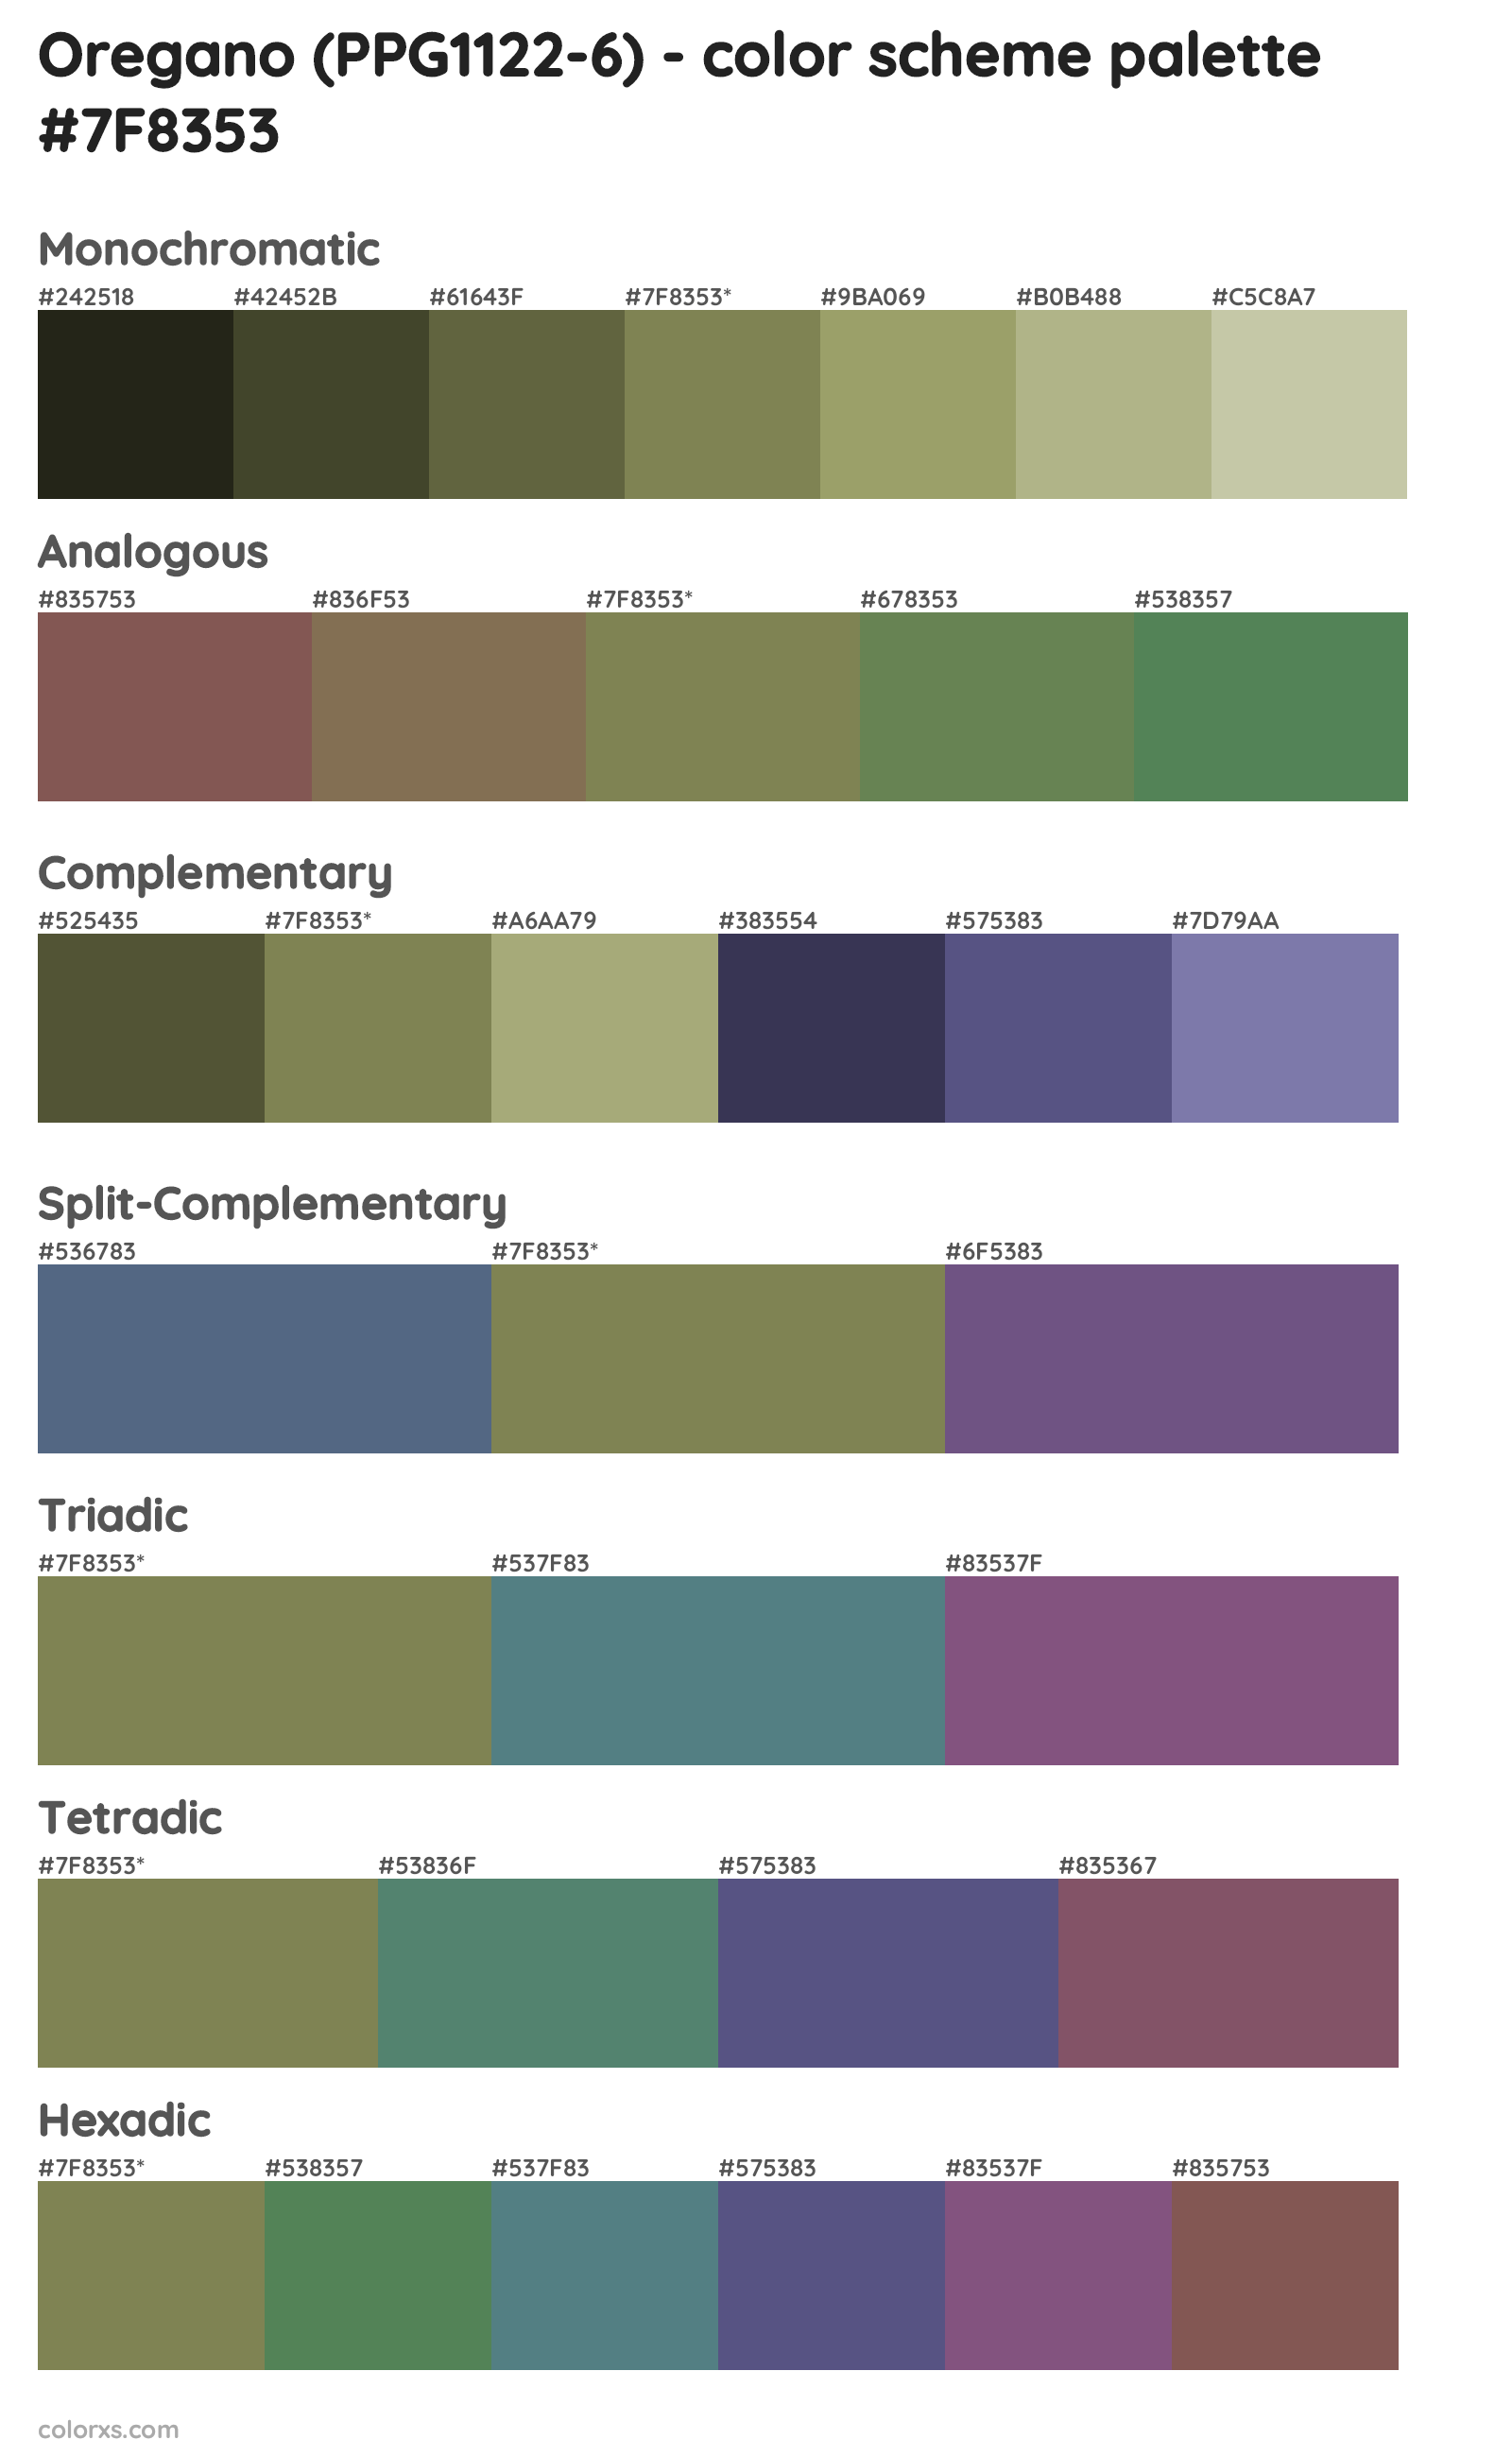 Oregano (PPG1122-6) Color Scheme Palettes